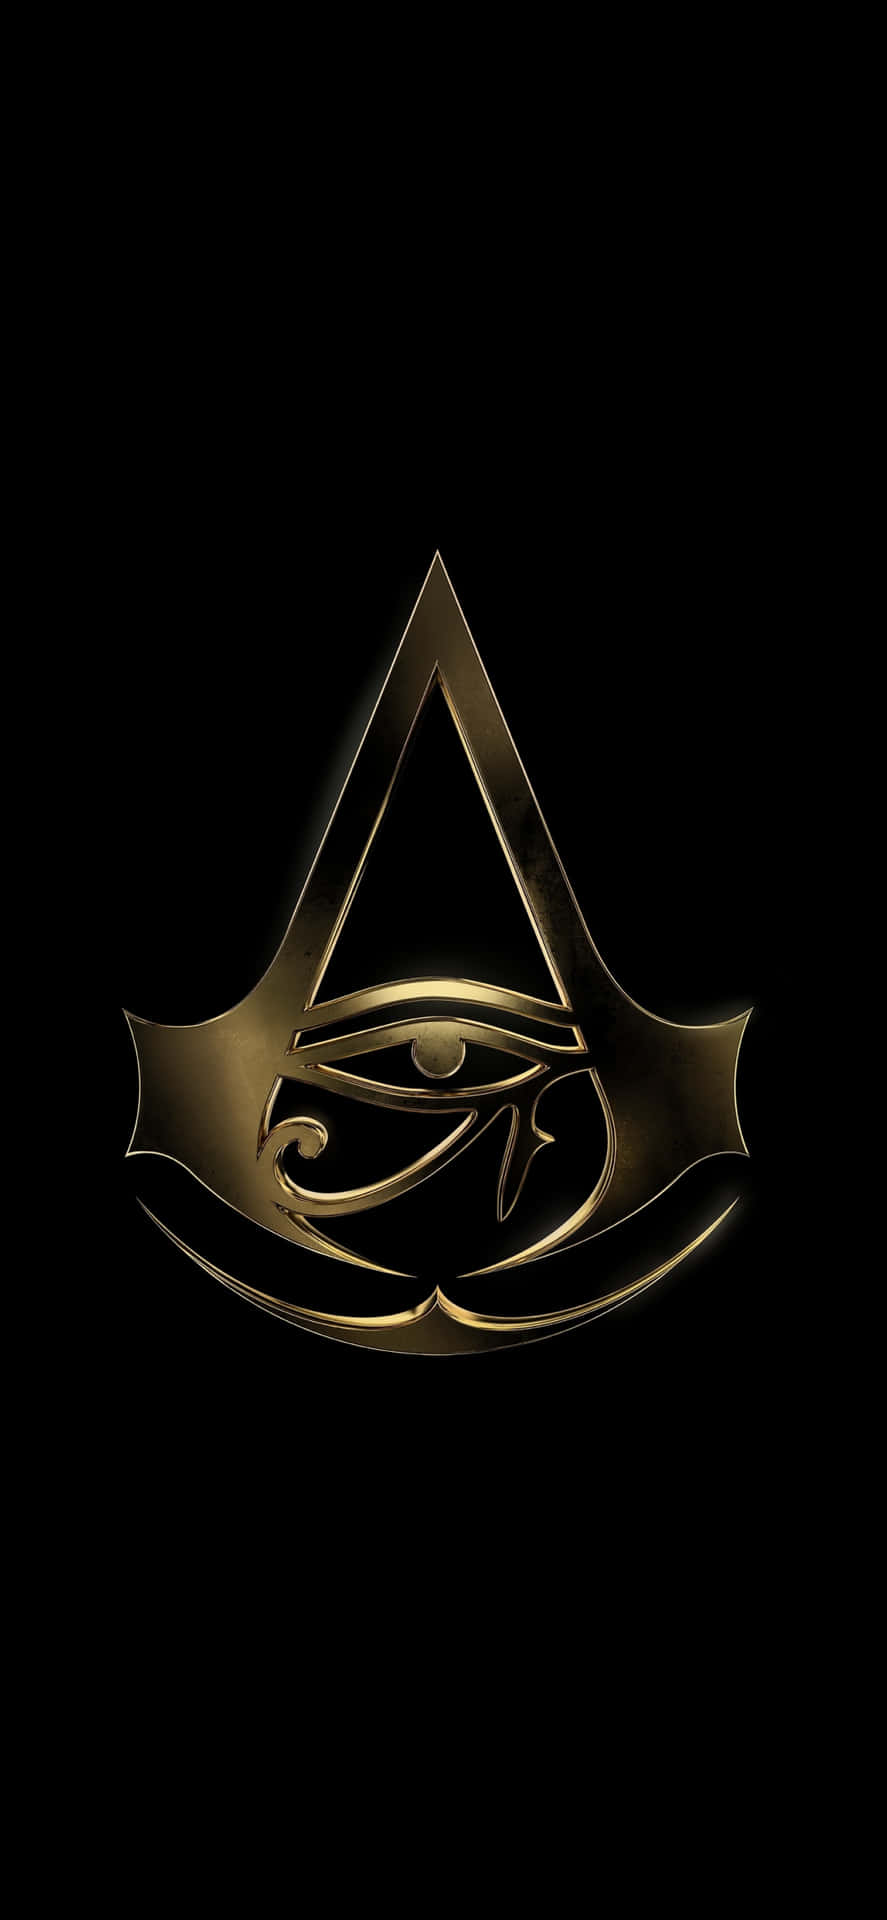 Immaginevikings, Esplora Valhalla In Assassin's Creed Con Un Iphone X.